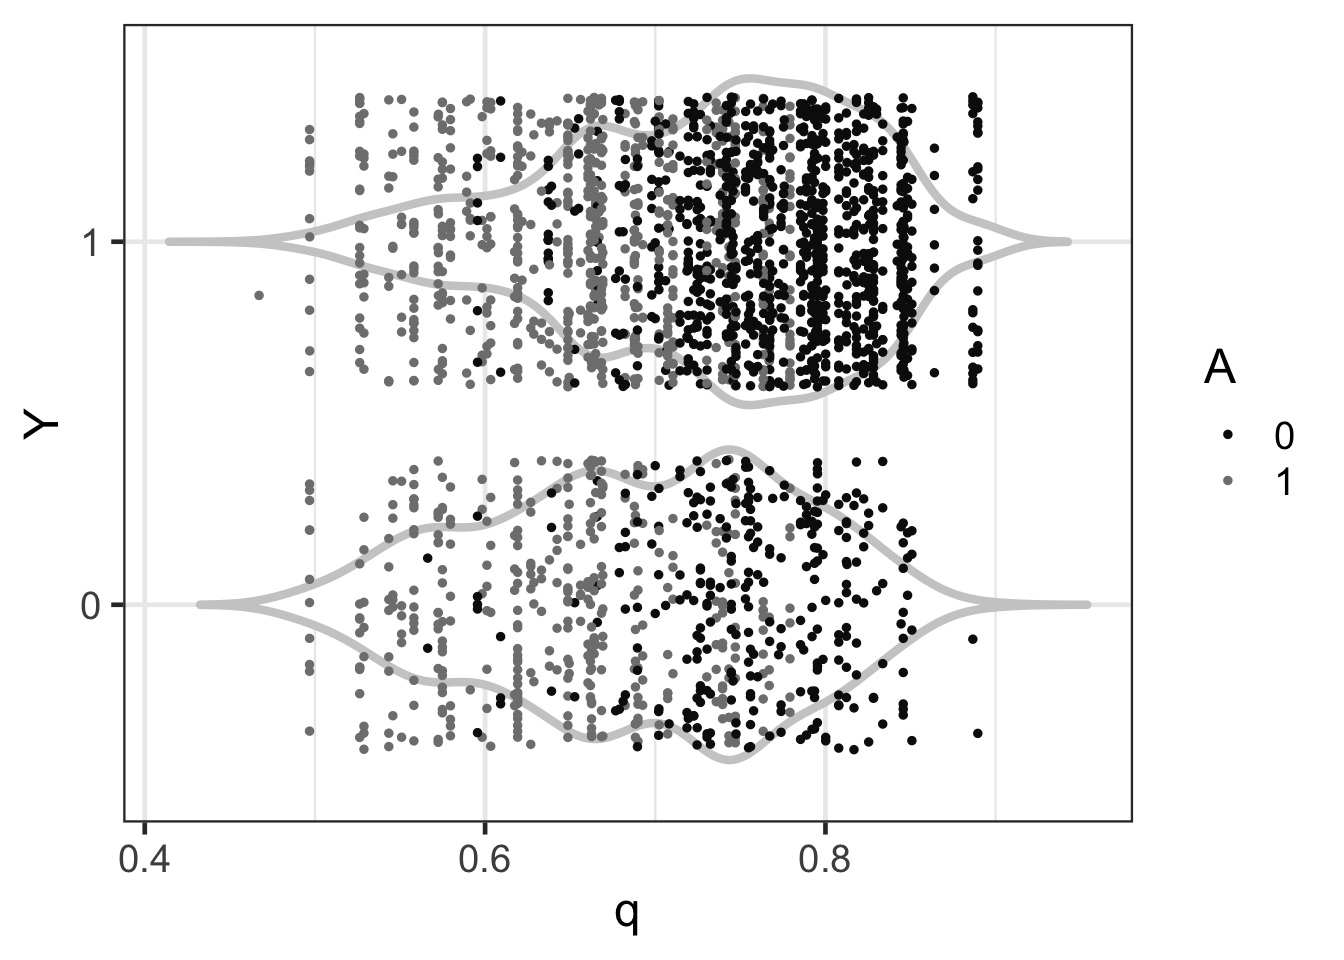 把計算獲得的事後概率的中央值作爲每名學生是否出勤的概率預測(x 軸)，和實際觀察的出勤結果(y 軸)，繪製的散點圖。其中，灰色的小提琴圖其實是根據獲得的事後概率的中央值的概率密度曲線，繪製的上下對稱的圖形，形似小提琴。